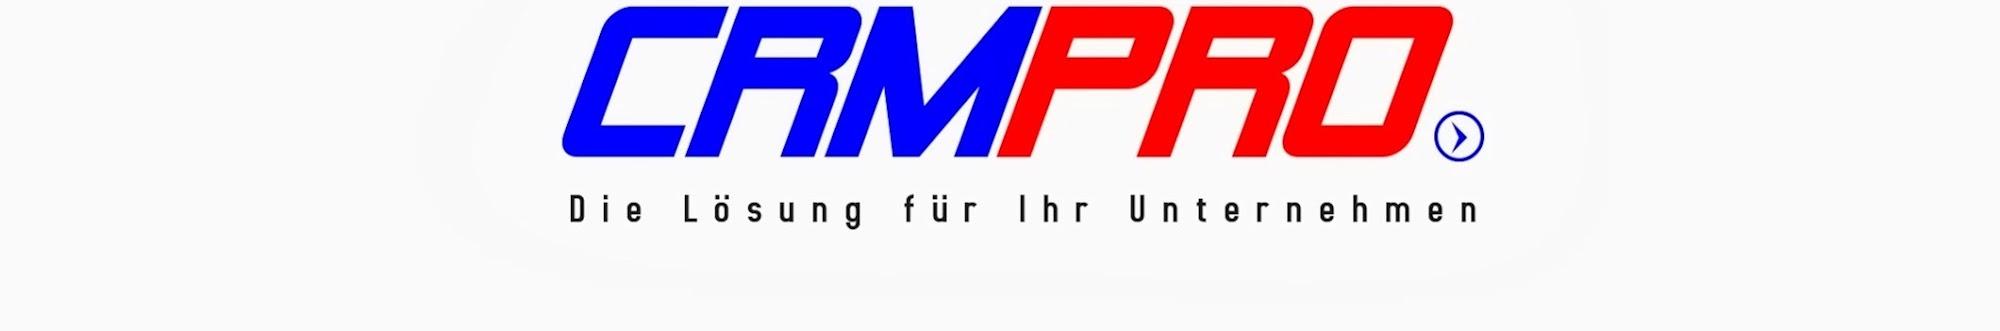 CRMPRO GmbH